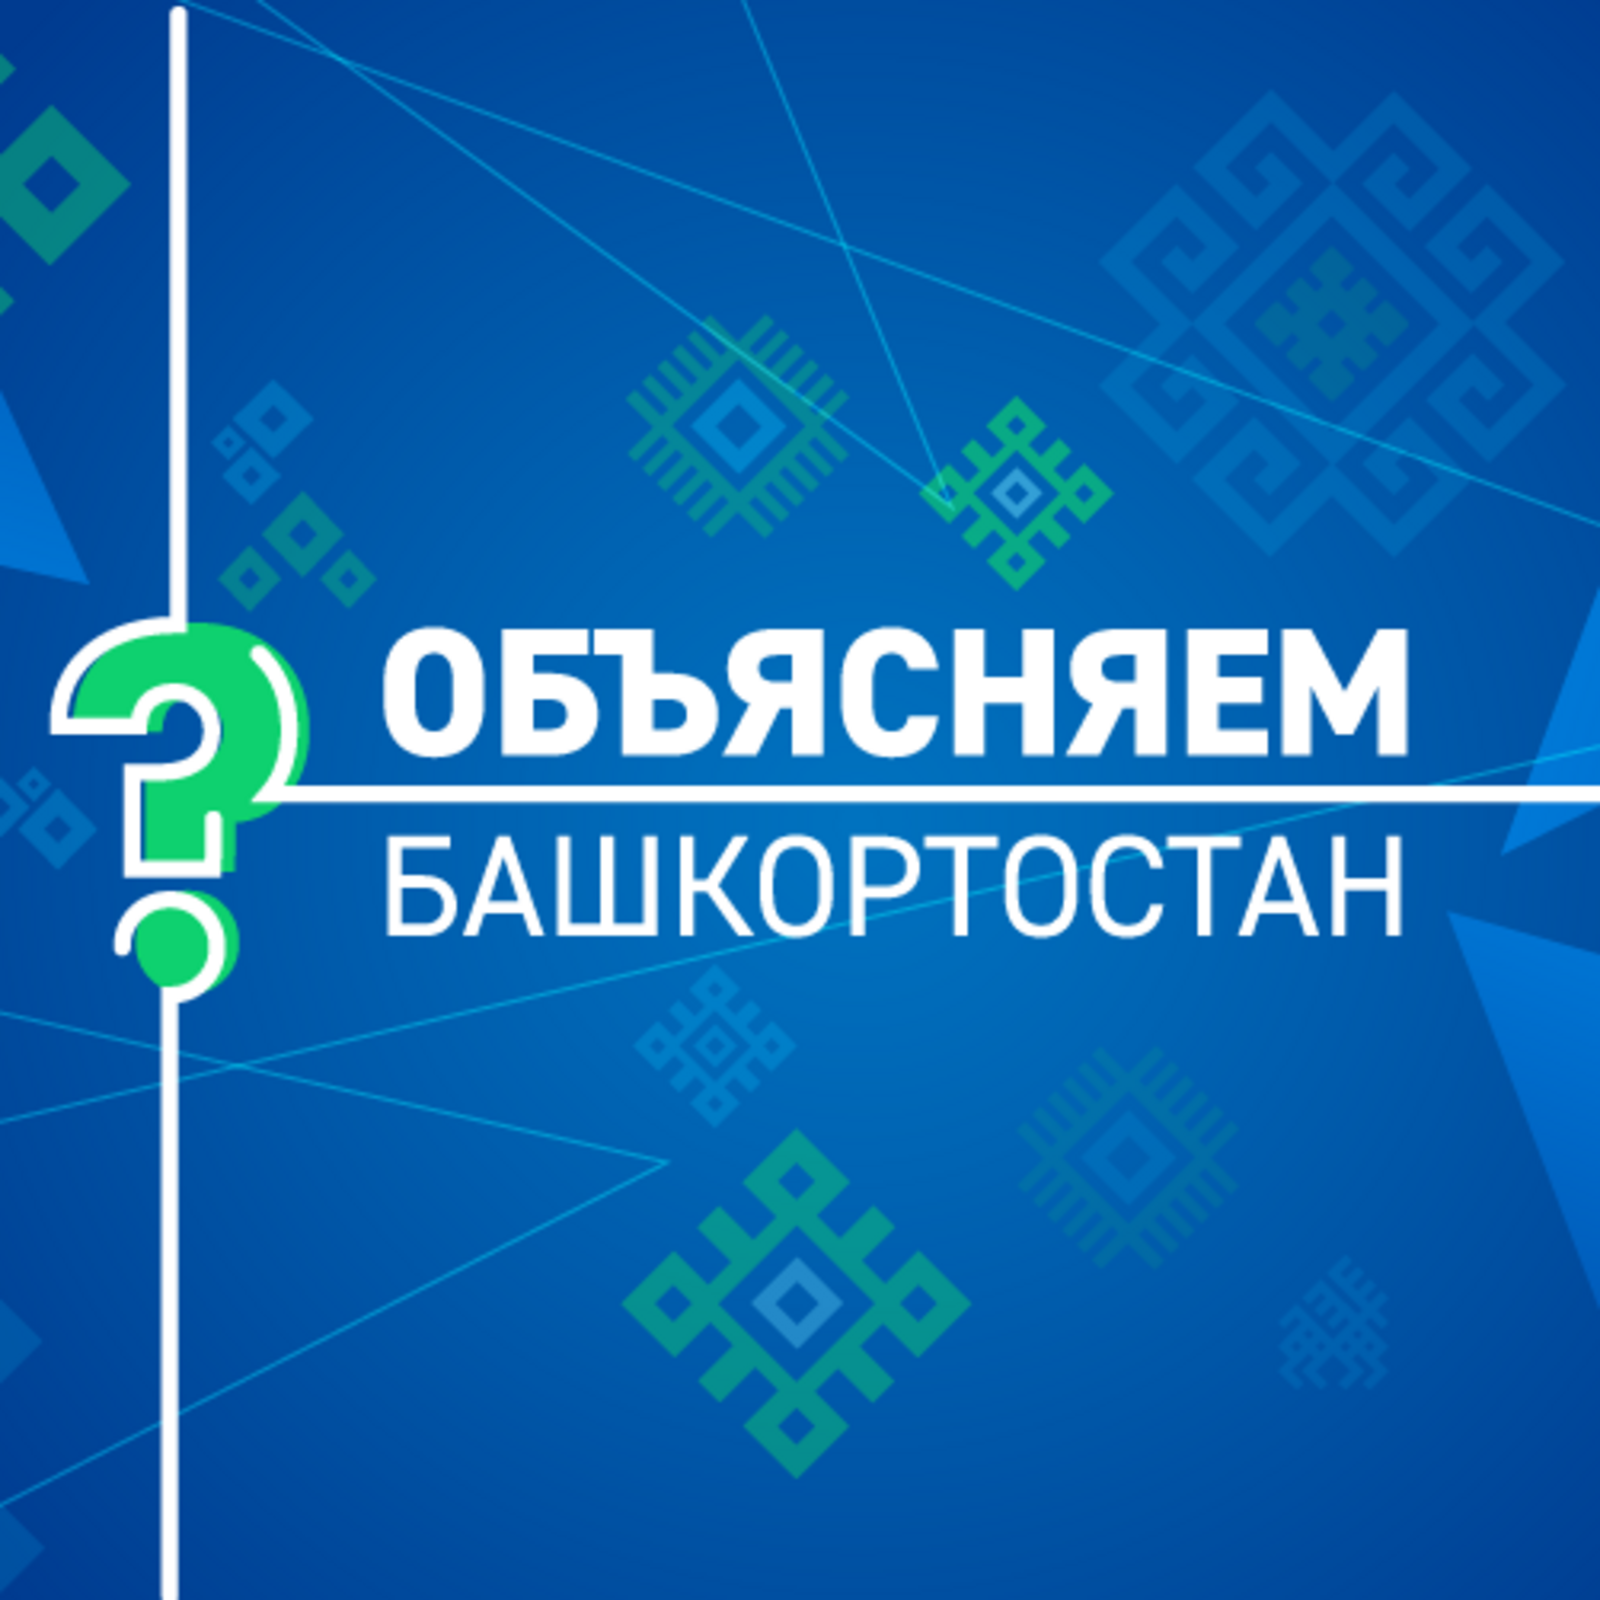 Как будет развиваться экономика Башкортостана в условиях санкций?